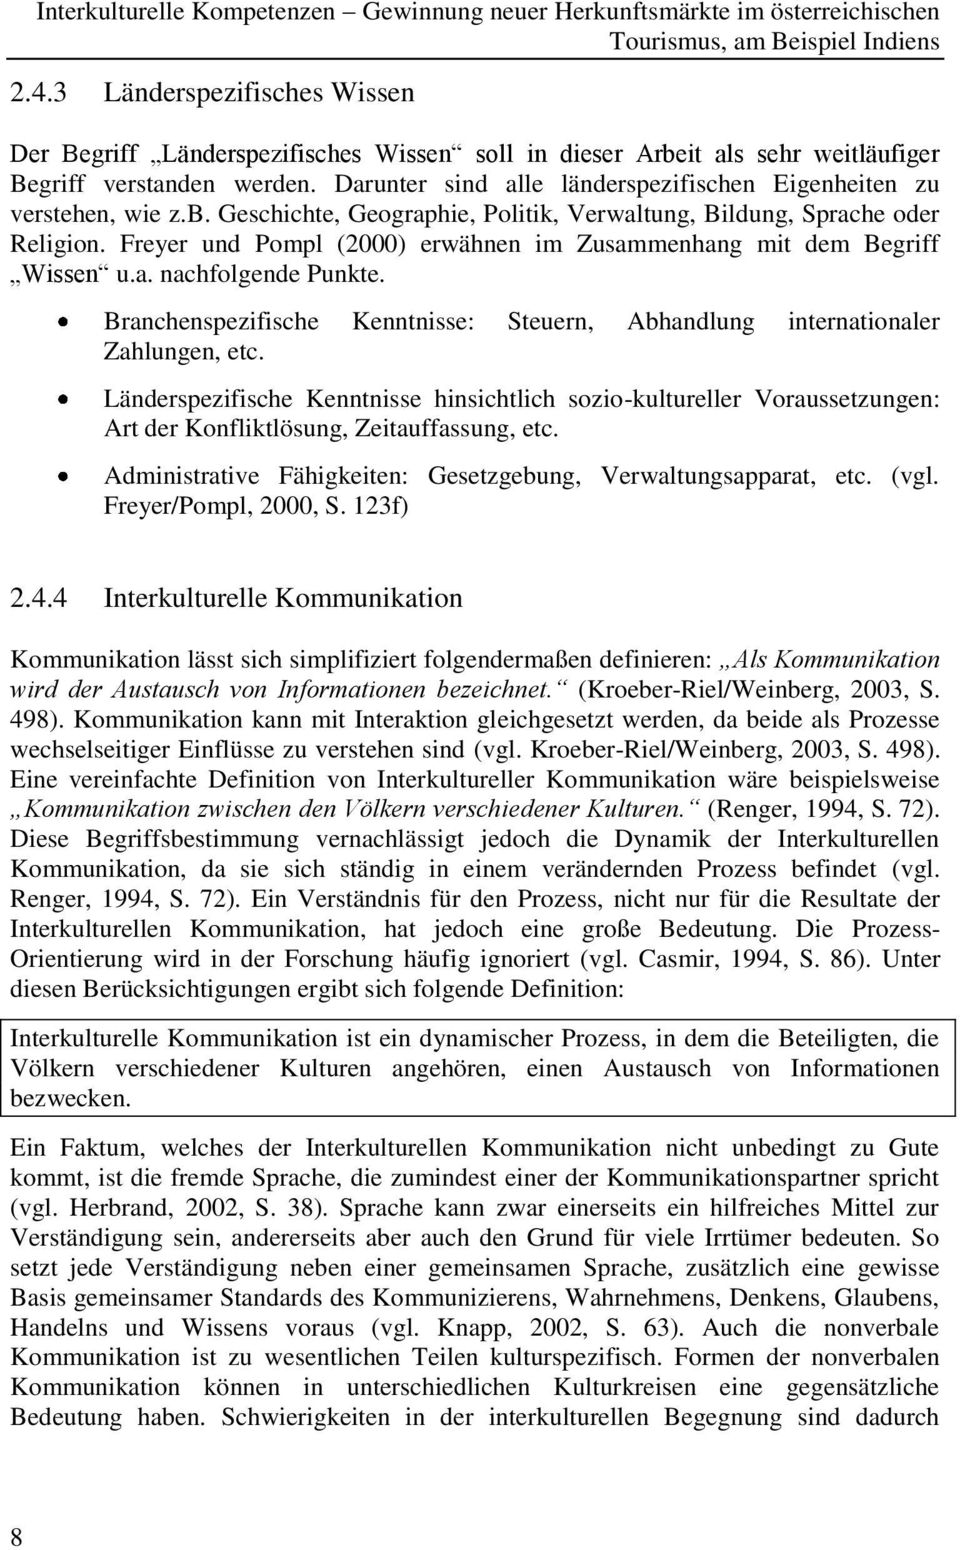 Freyer und Pompl (2000) erwähnen im Zusammenhang mit dem Begriff Wissen u.a. nachfolgende Punkte. Branchenspezifische Kenntnisse: Steuern, Abhandlung internationaler Zahlungen, etc.